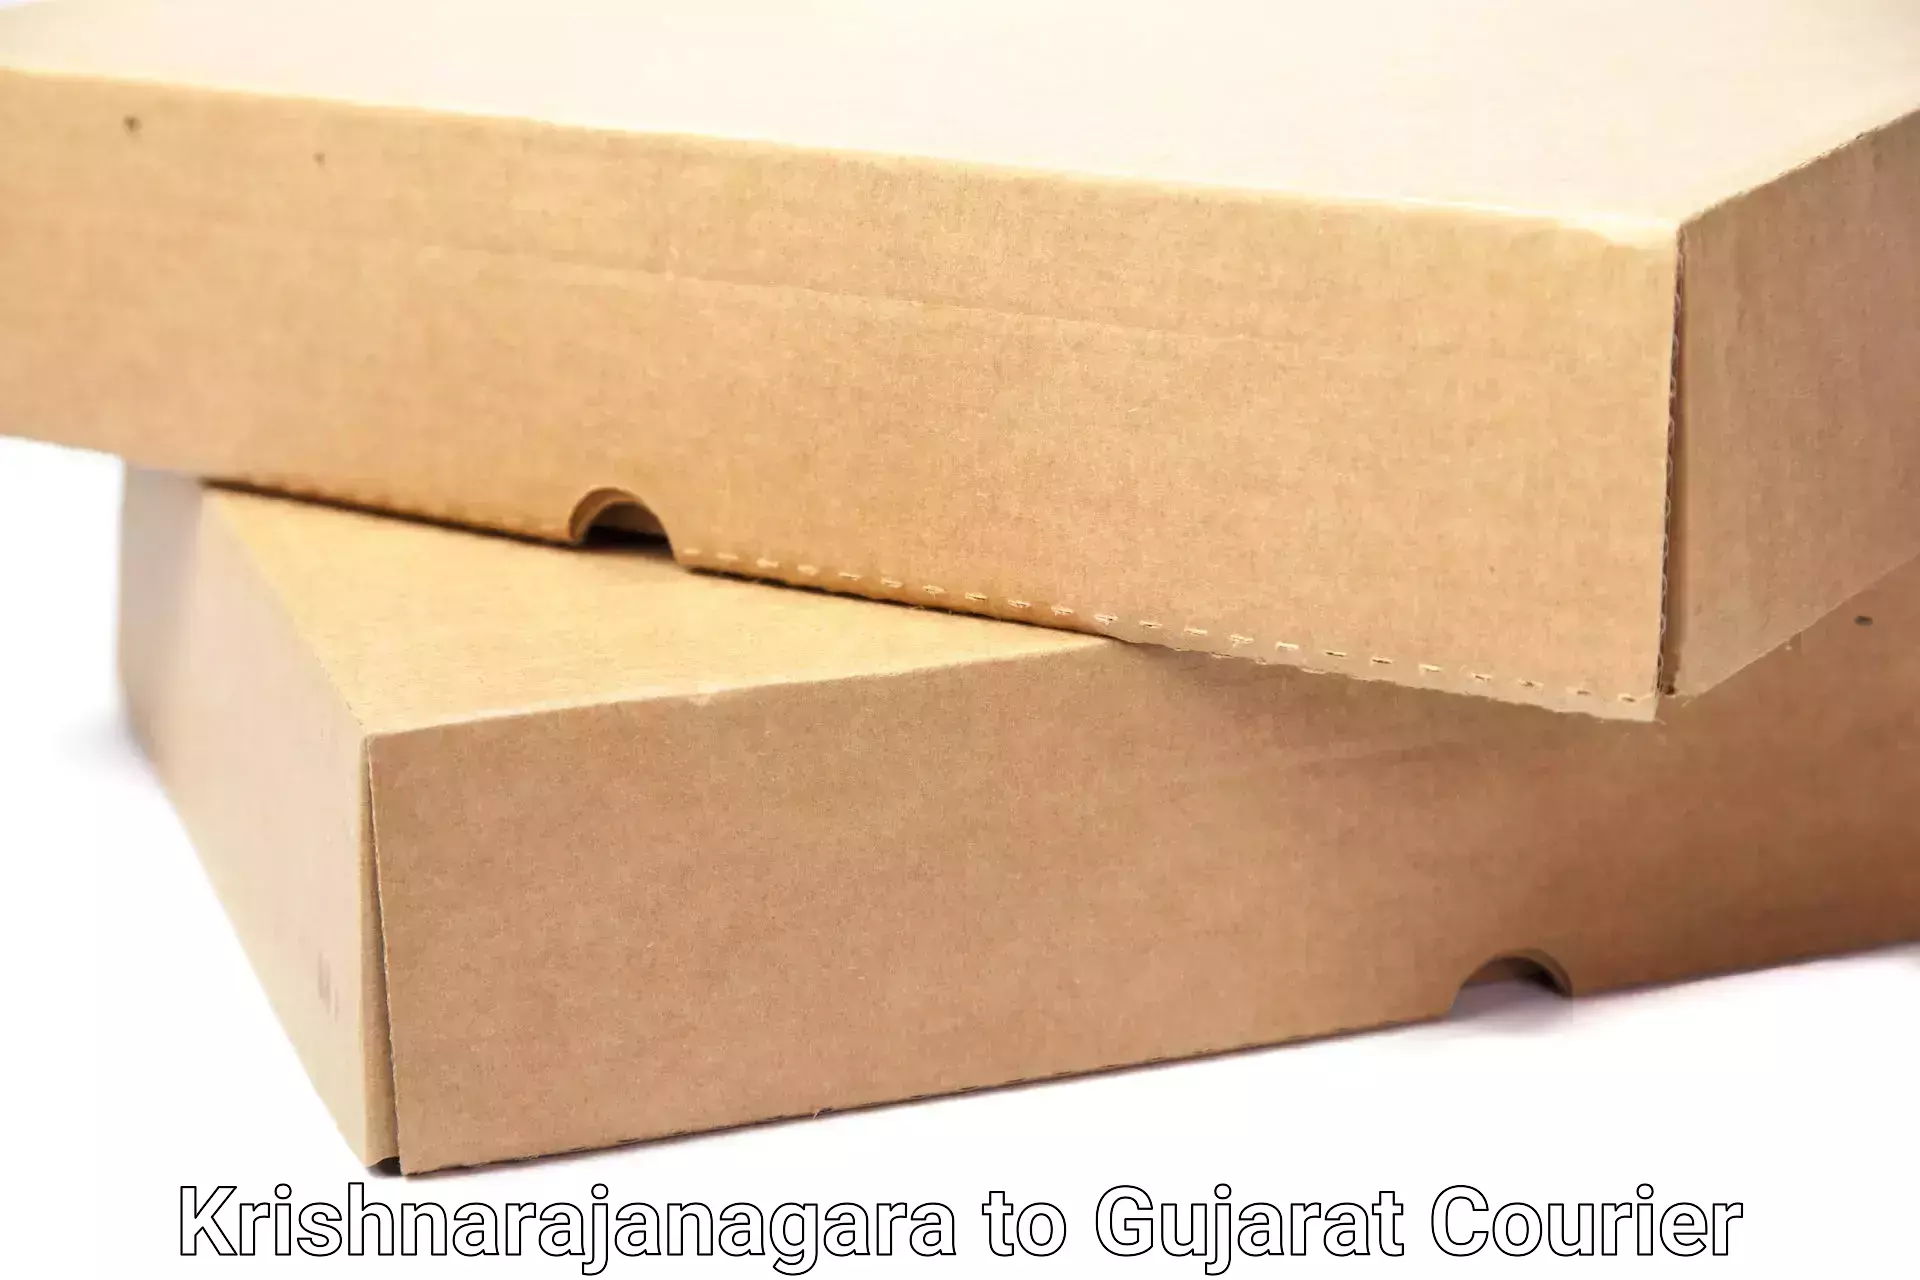 Furniture moving experts Krishnarajanagara to Gujarat